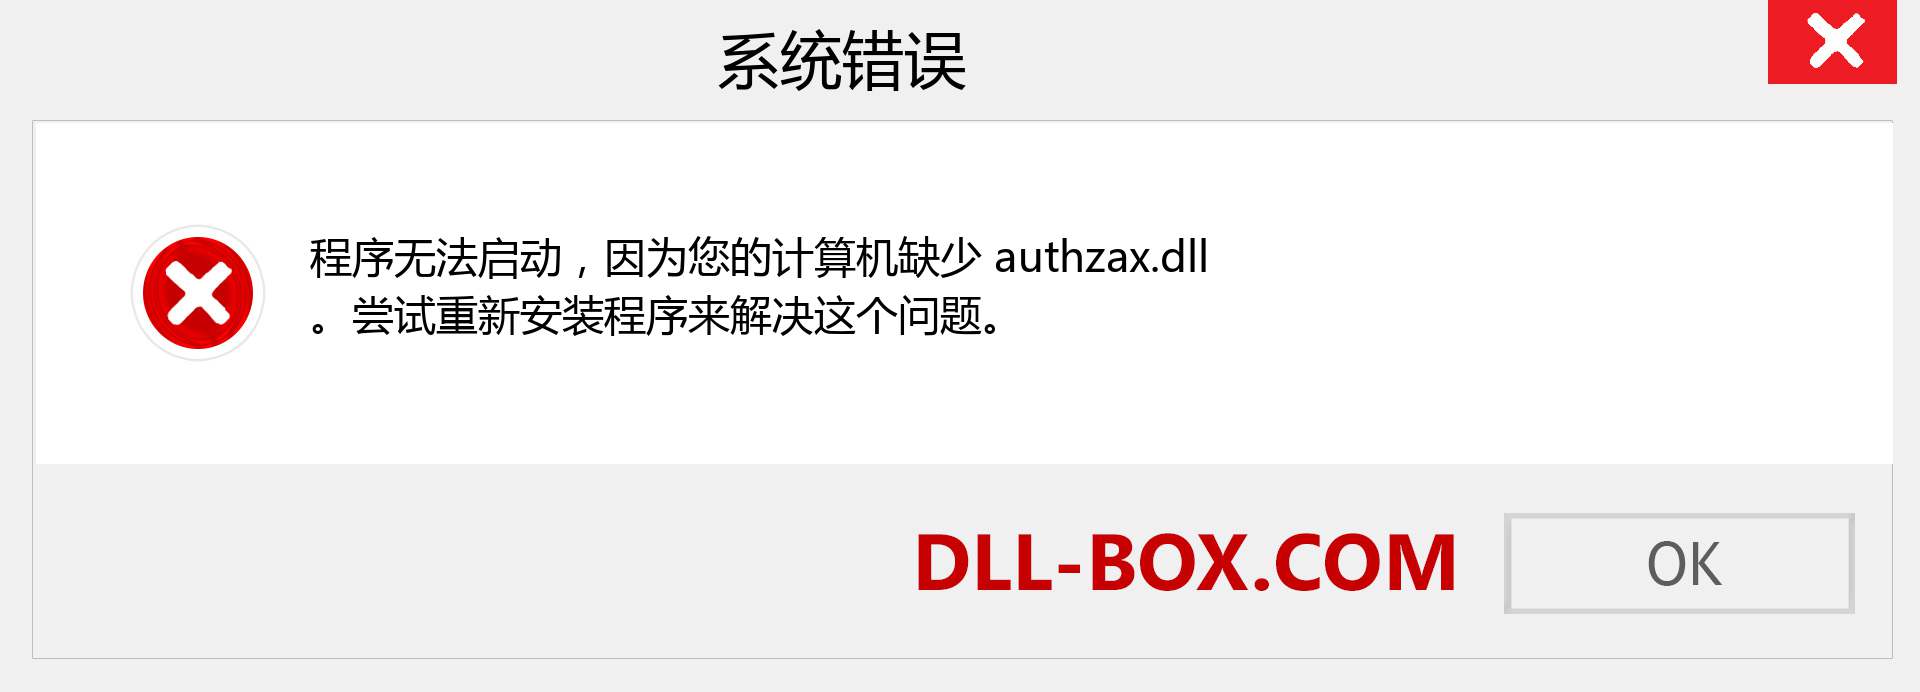 authzax.dll 文件丢失？。 适用于 Windows 7、8、10 的下载 - 修复 Windows、照片、图像上的 authzax dll 丢失错误